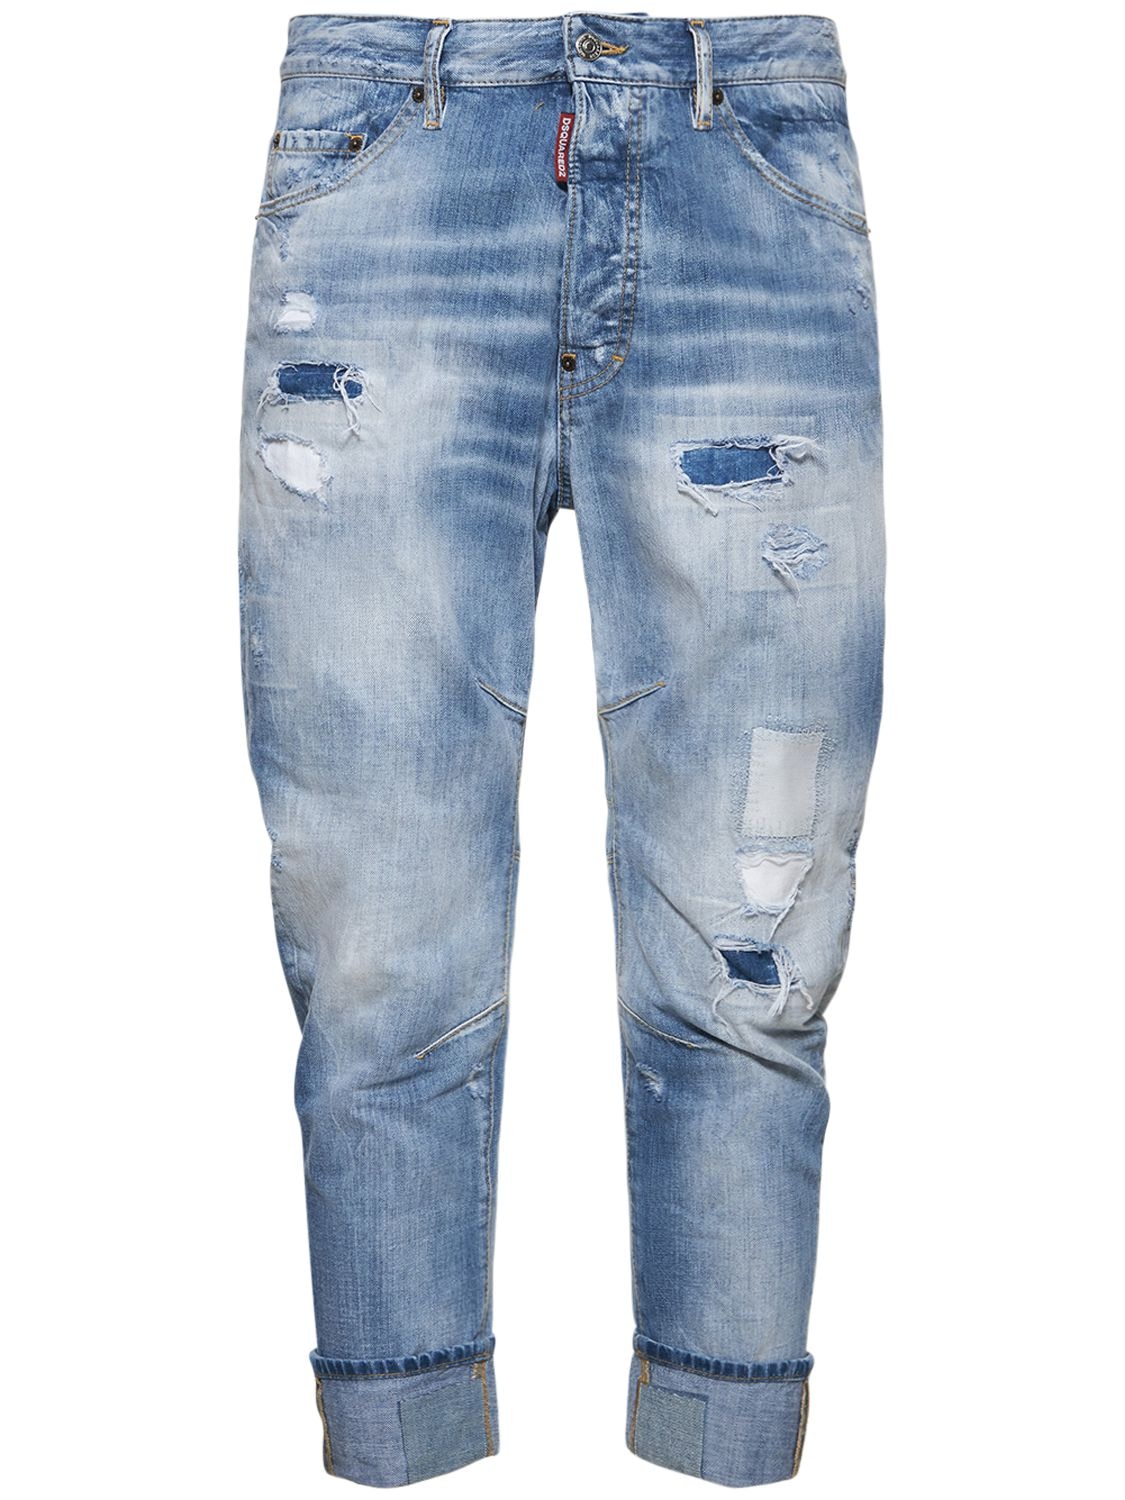 Tailored Combat Cotton Denim Jeans – MEN > CLOTHING > JEANS